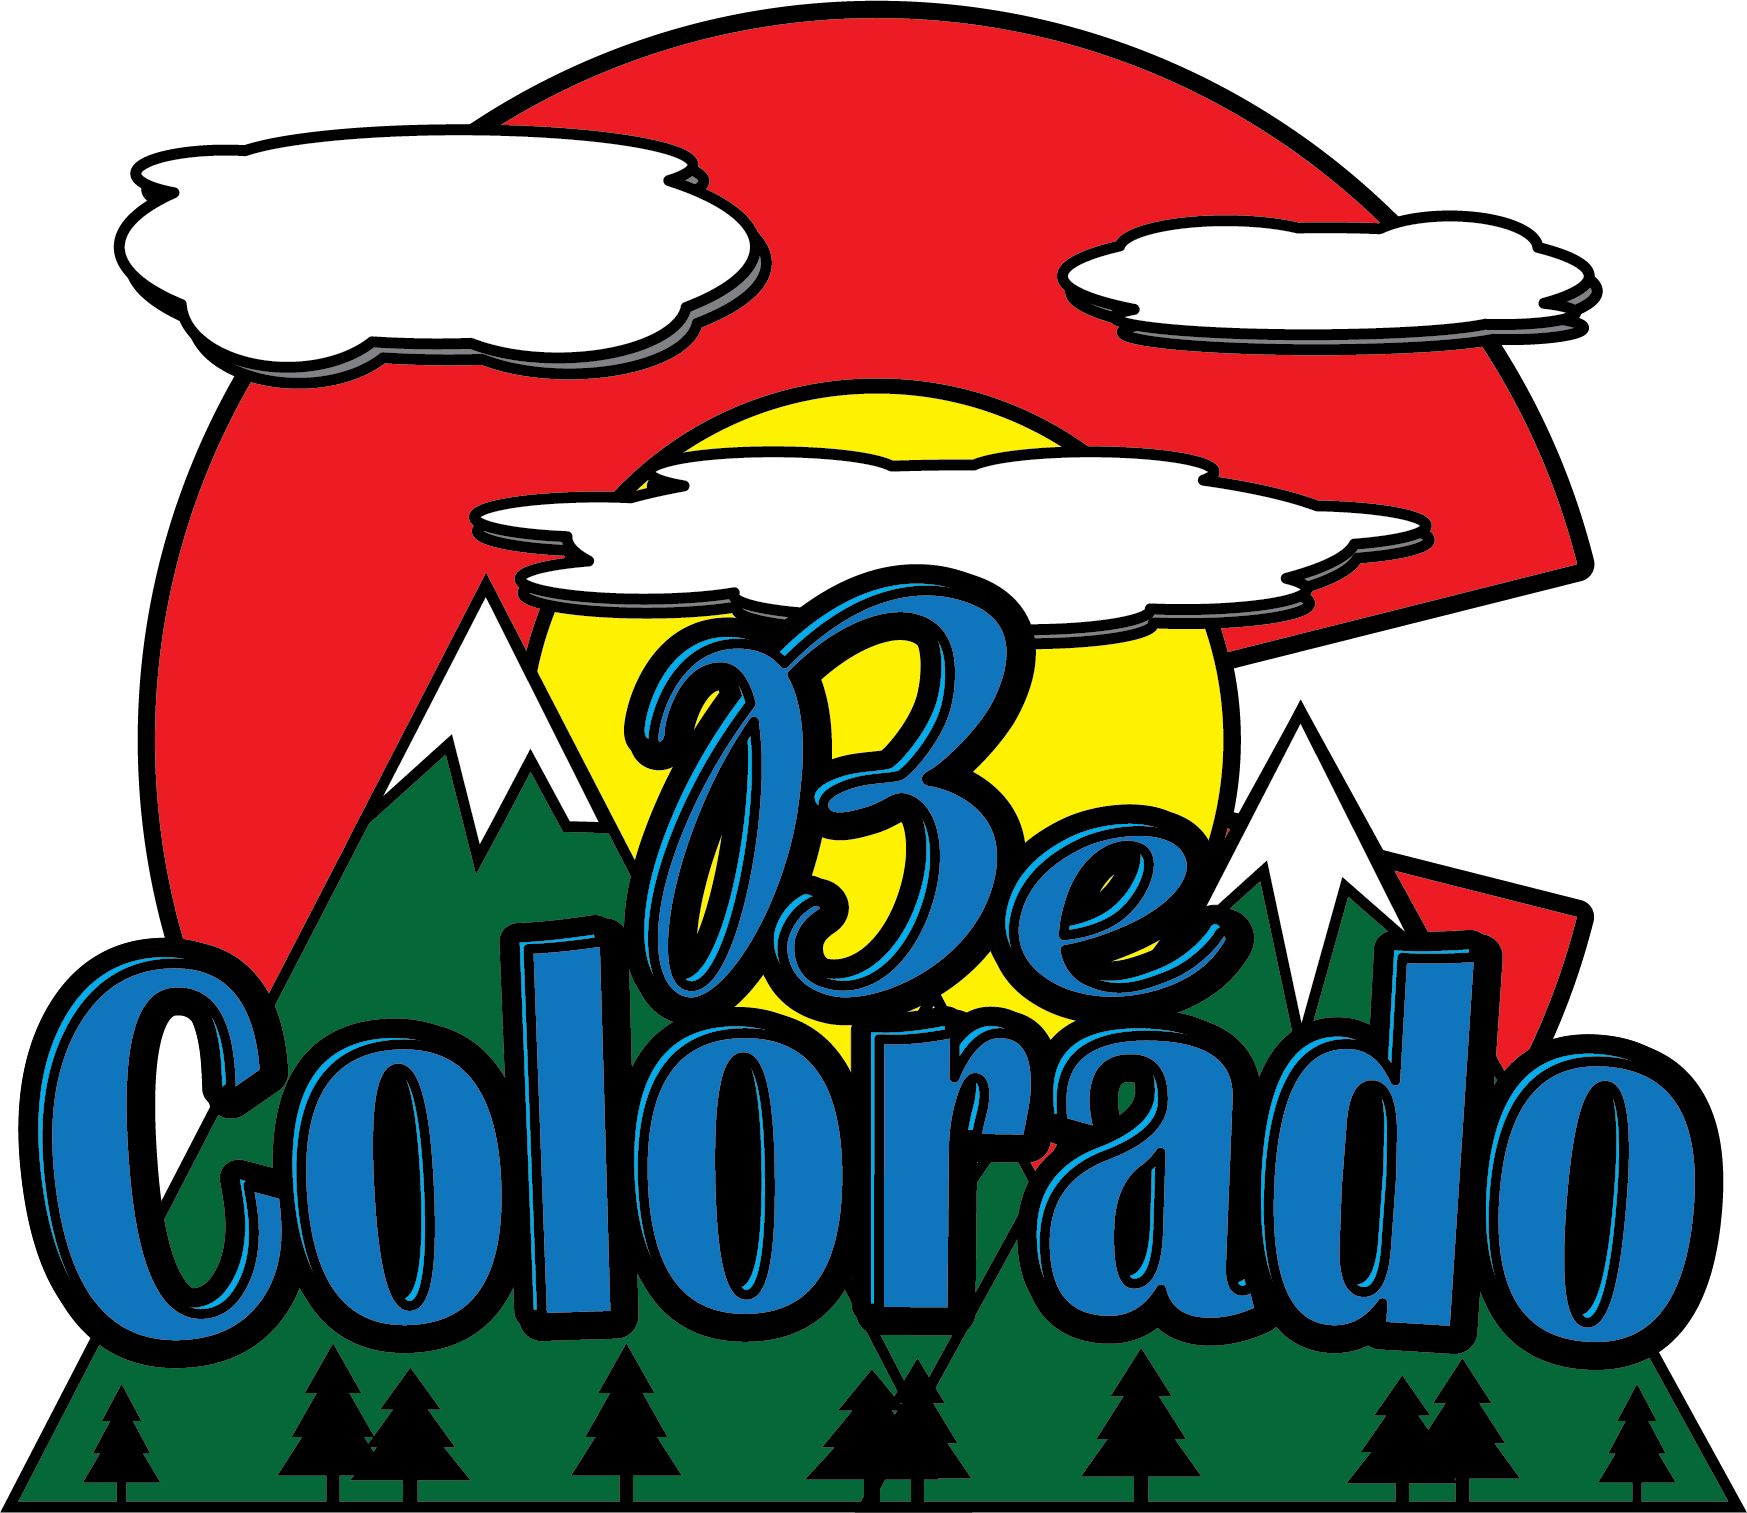 Be Colorado